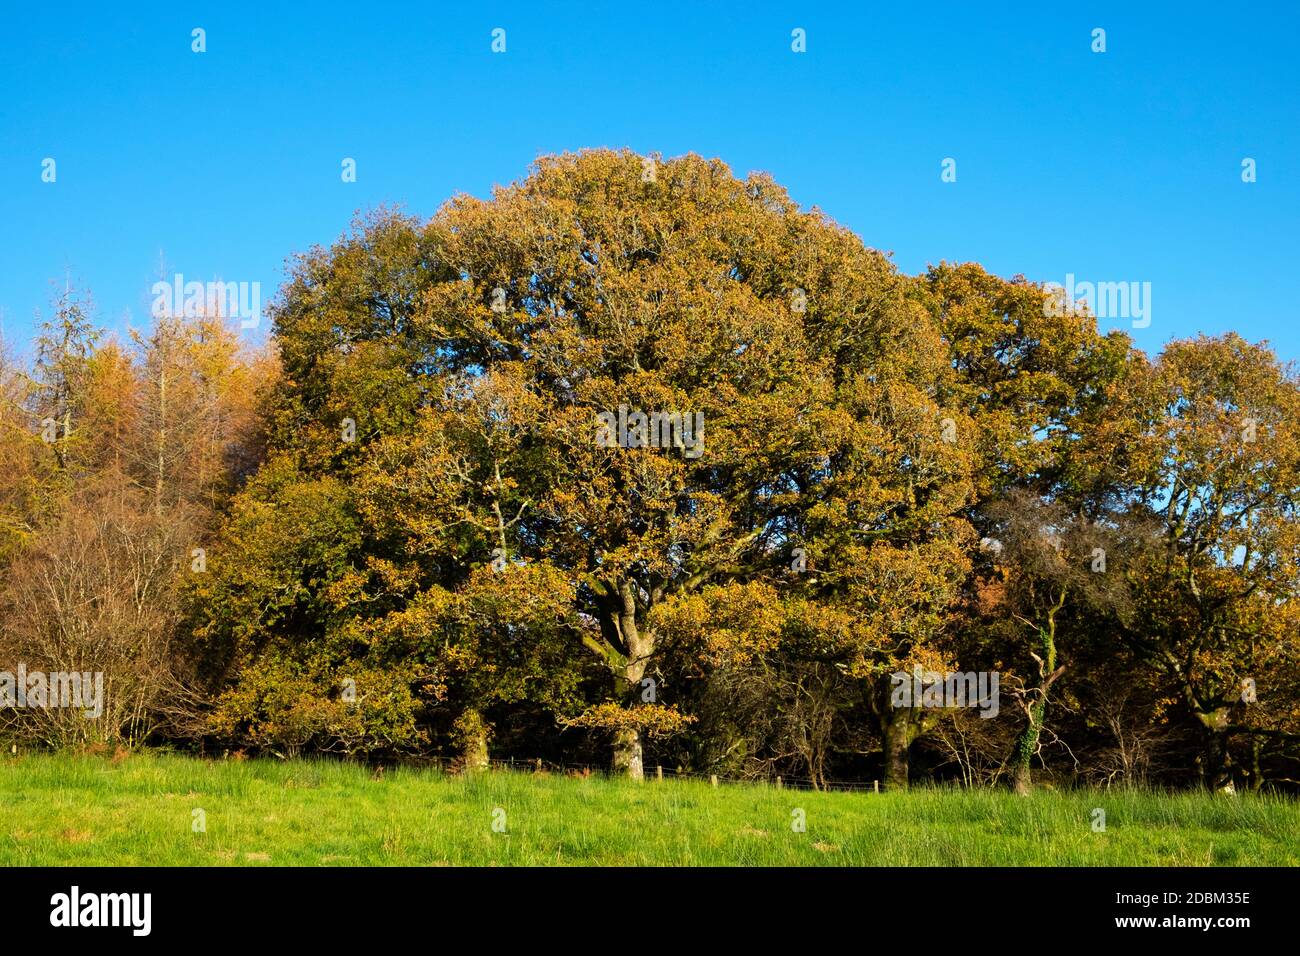 Die Herbstfarben auf den Blättern der riesigen Eiche wachsend In einem Wald Blick gegen einen blauen Himmel auf sonnig Tag Sonnenschein Kopie Raum Wales UK 2020 KATHY DEWITT Stockfoto